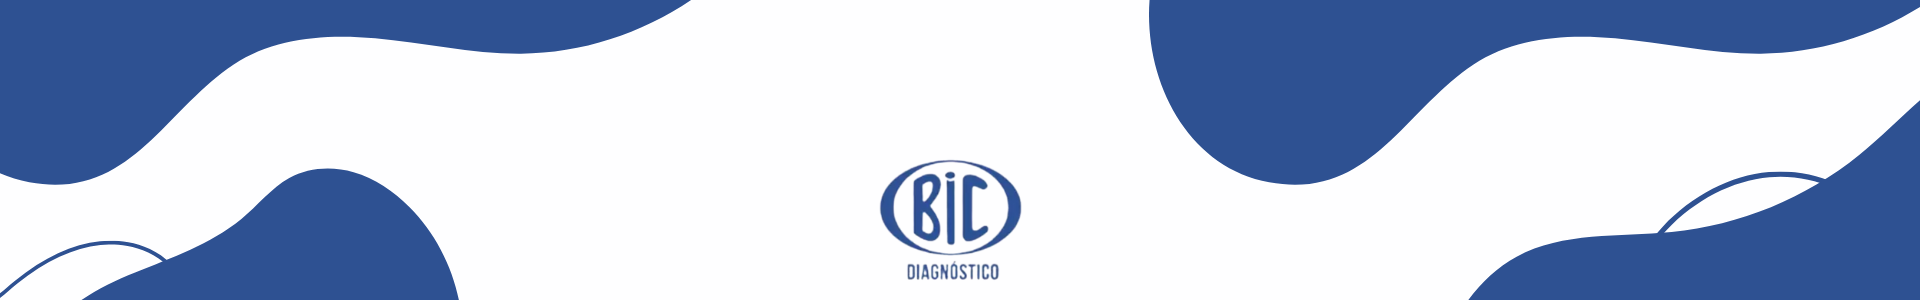 Marca BIC Diagnóstico